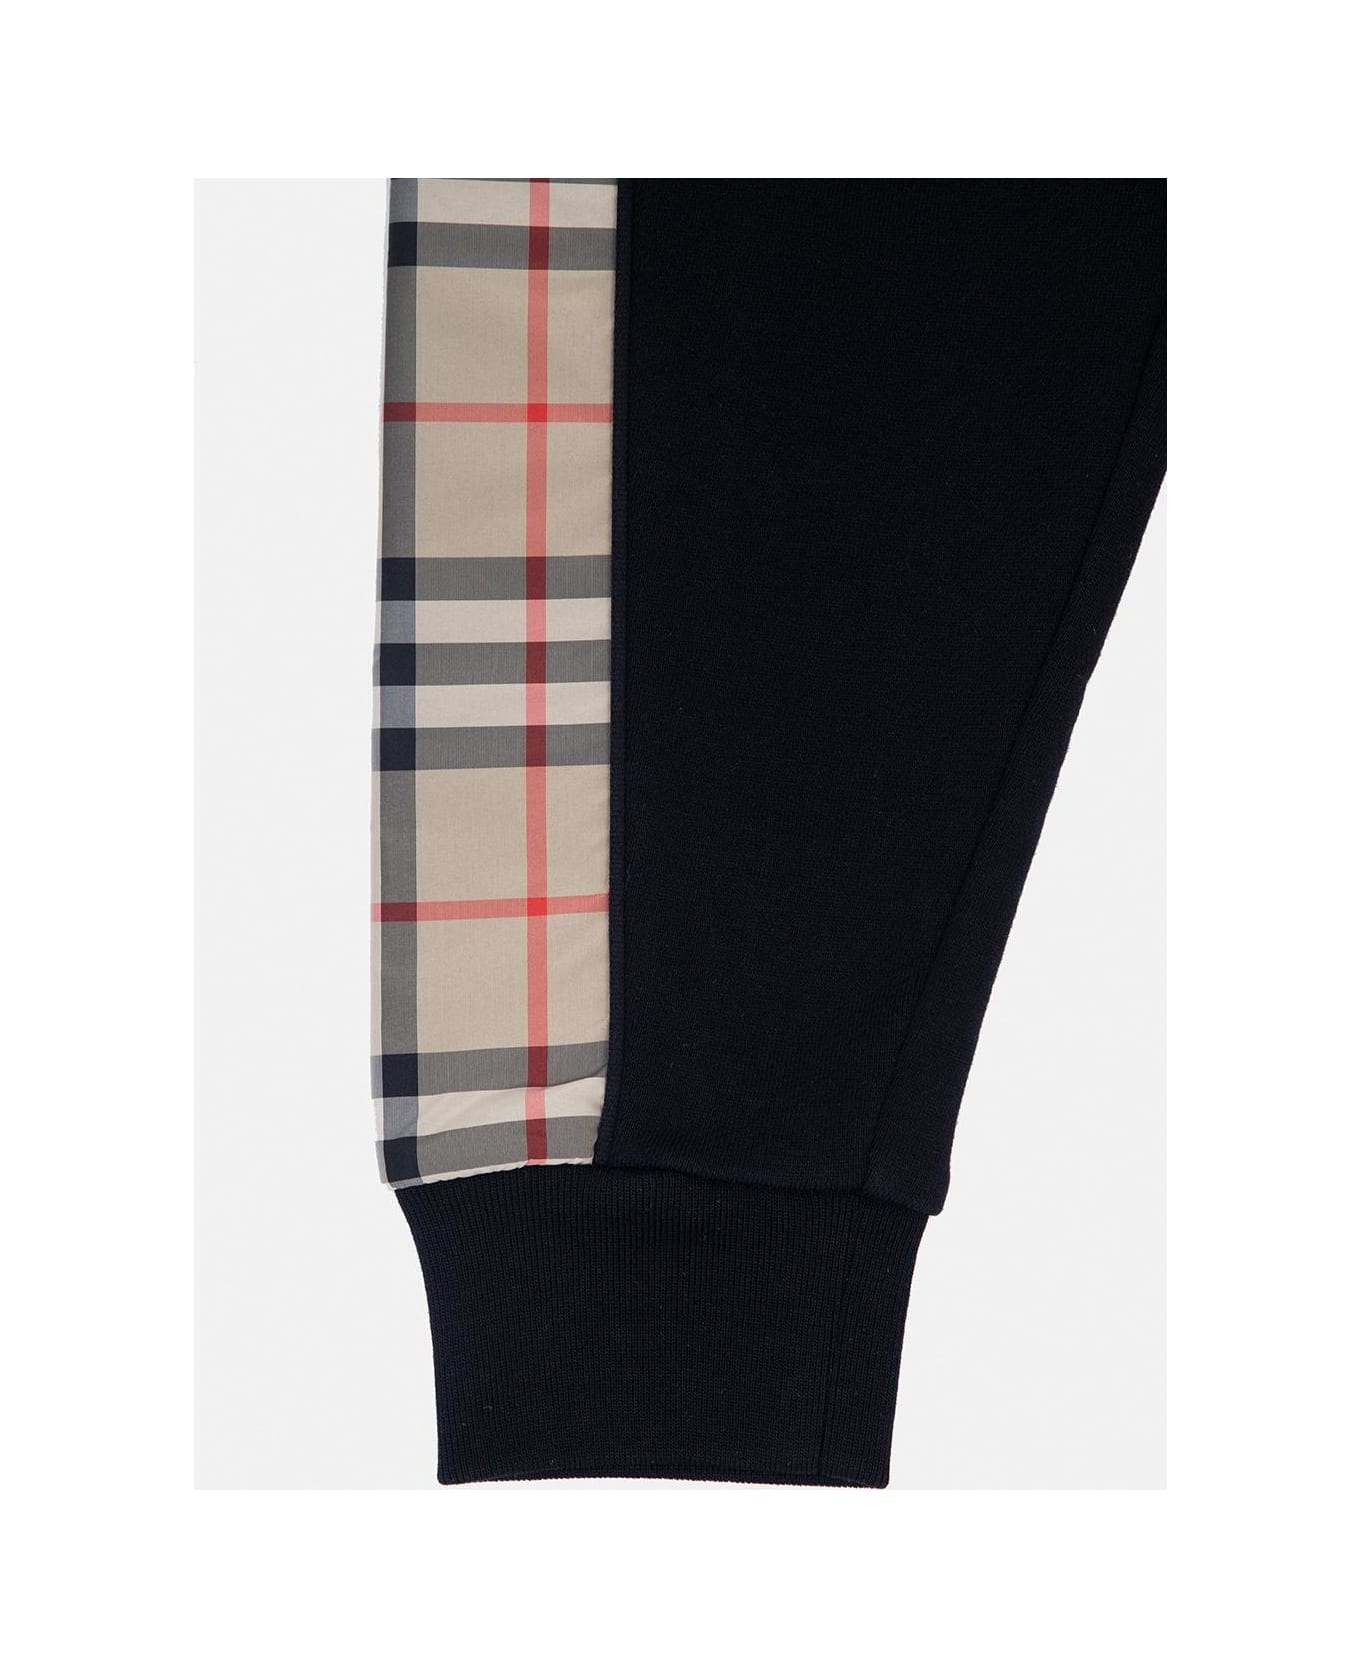 Burberry 'nolen' Patterned Sweatpants - Black